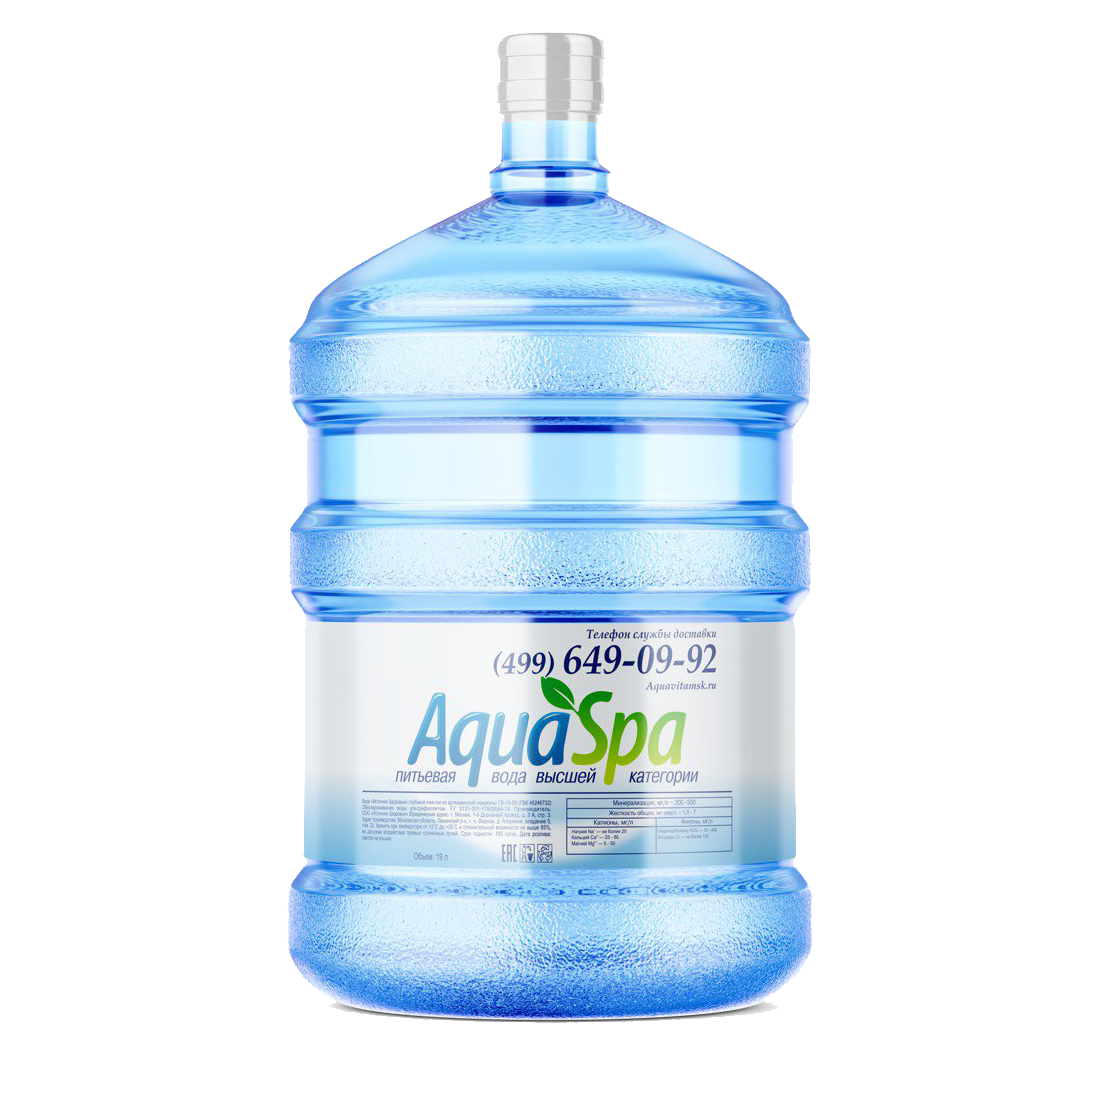 Питьевая артезианская вода "AquaSpa" высшая категория